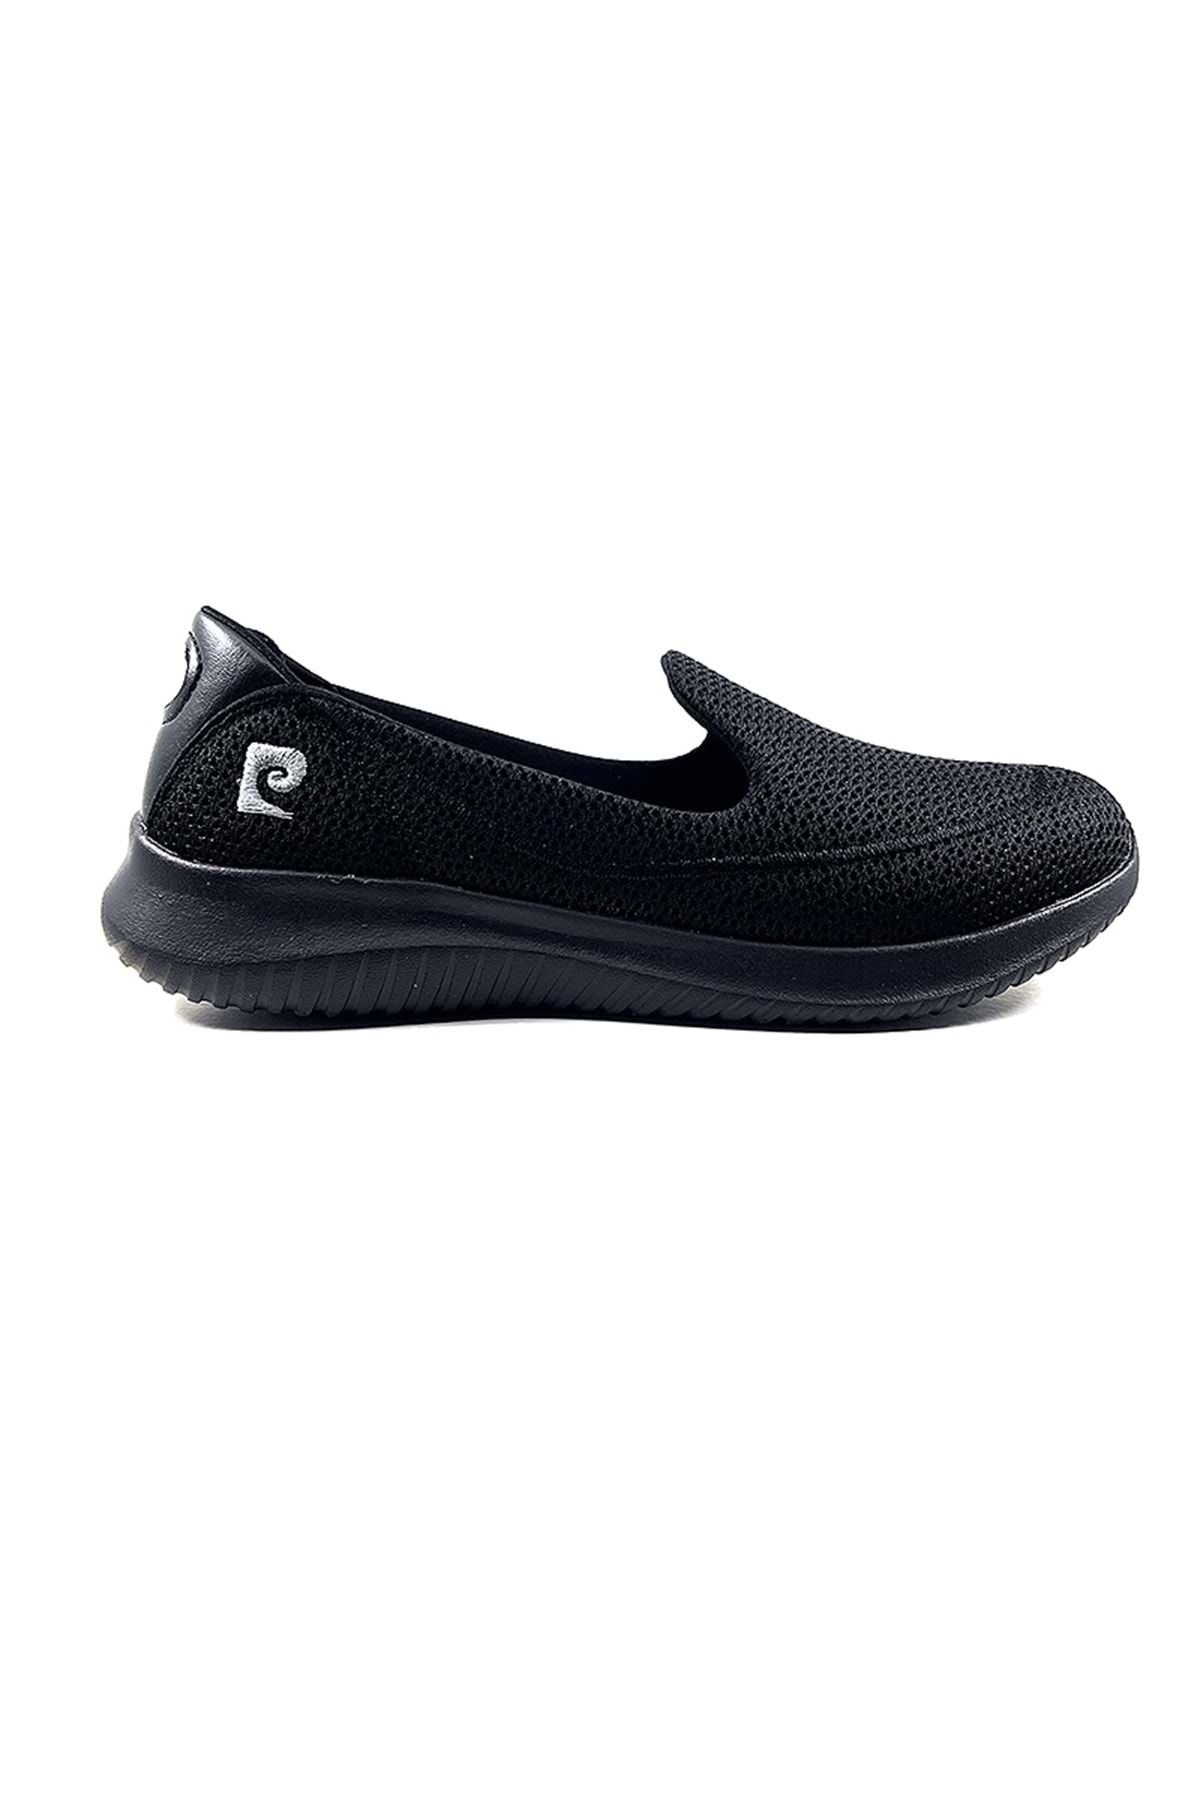 Pierre Cardin Pc-30168 Siyah Kadın Spor Ayakkabı - Siyah - 39